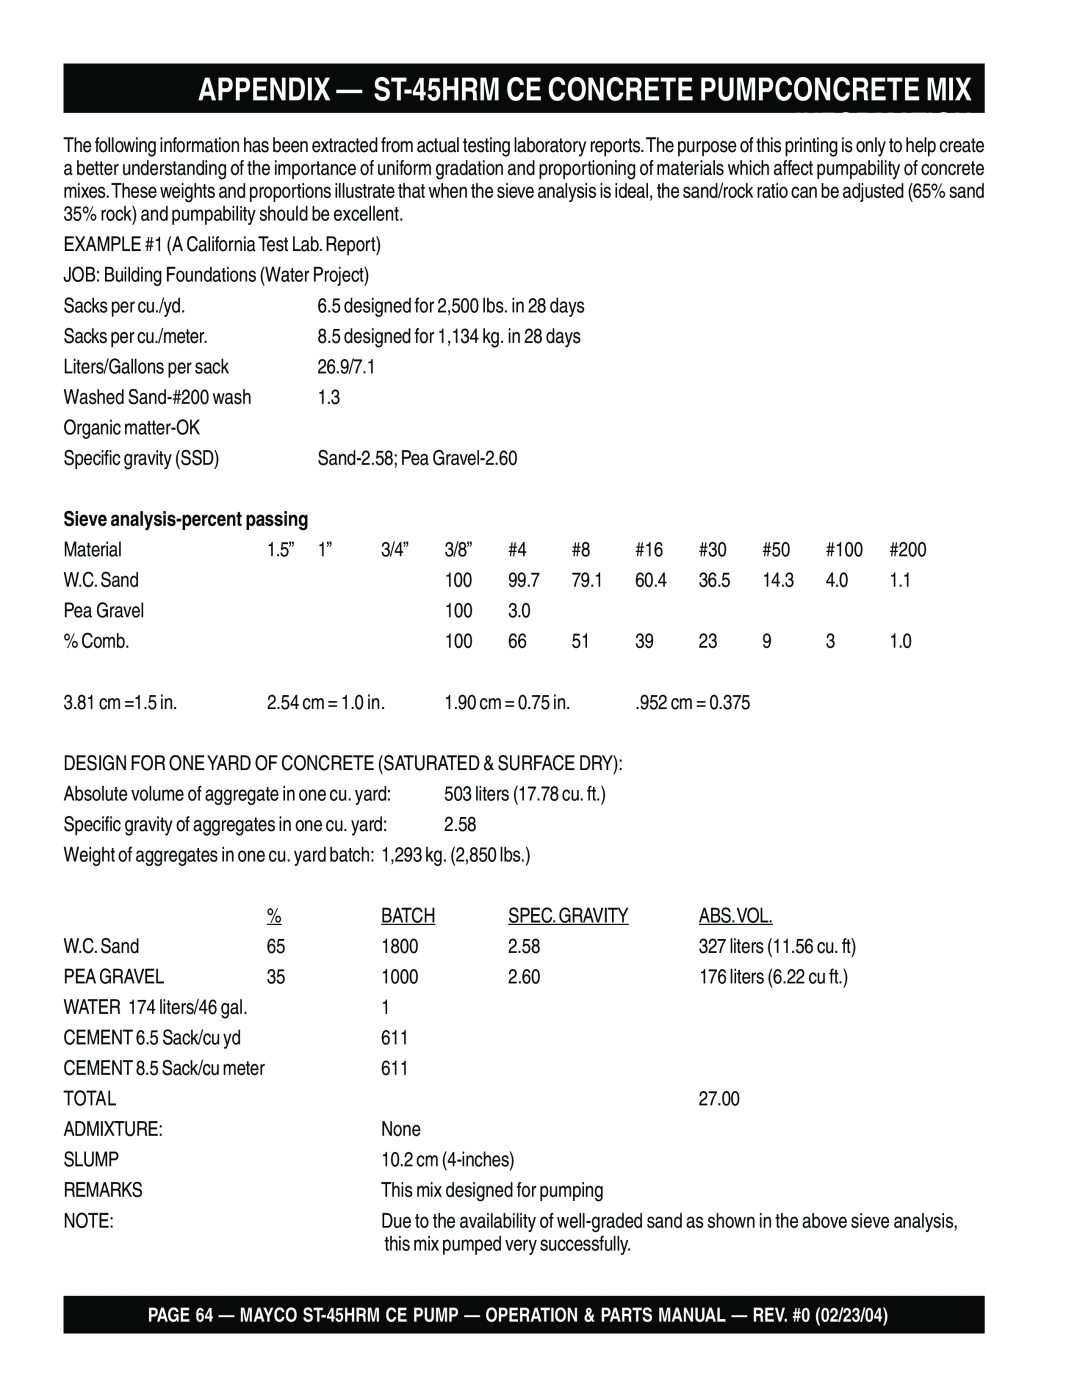 Multiquip ST-45HRM CE manual APPENDIX — ST-45HRMCE CONCRETE PUMPCONCRETE MIX 